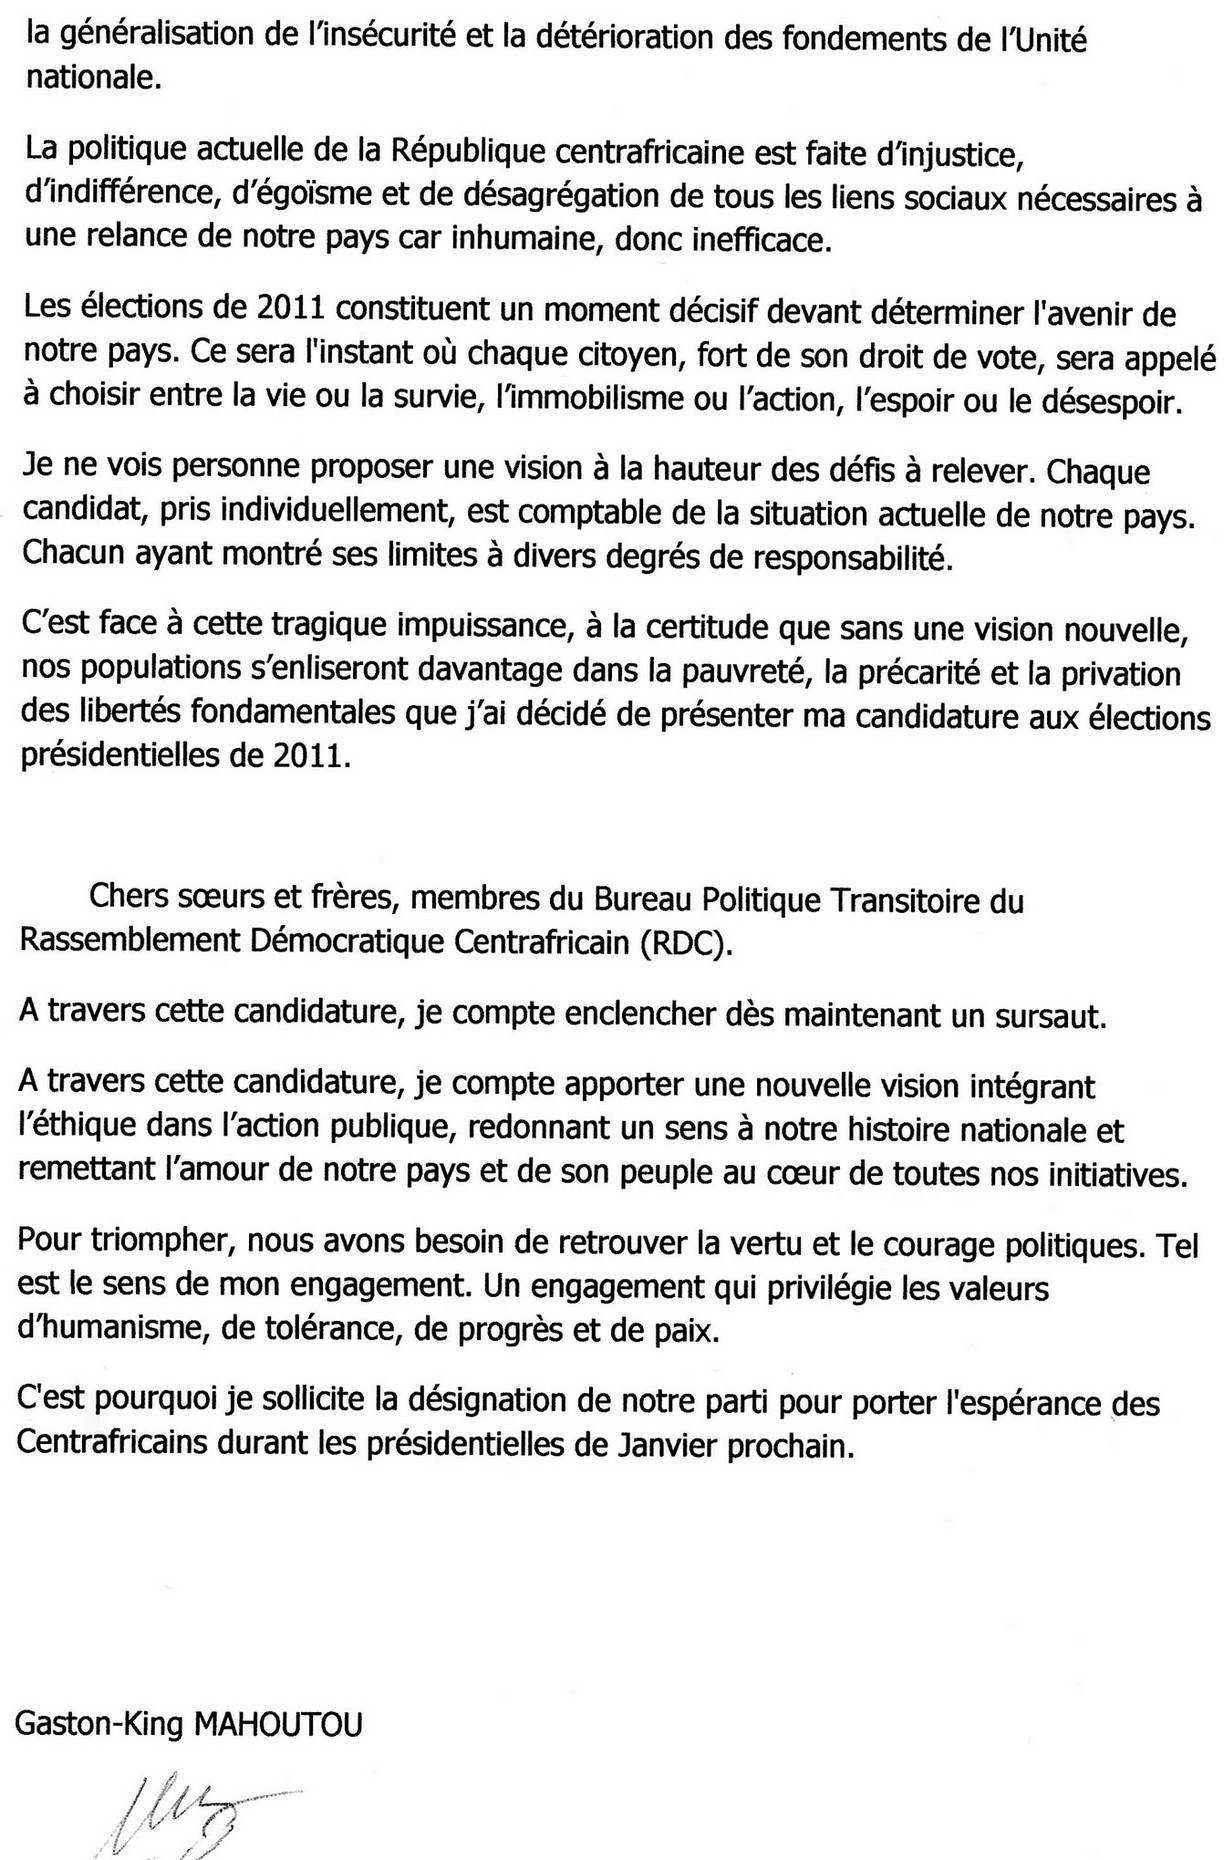 Gaston-King MAHOUTOU: DECLARATION DE CANDIDATURE AUX ELECTIONS PRESIDENTIELLES DE 2011 EN REPUBLIQUE CENTRAFRICAINE Part2